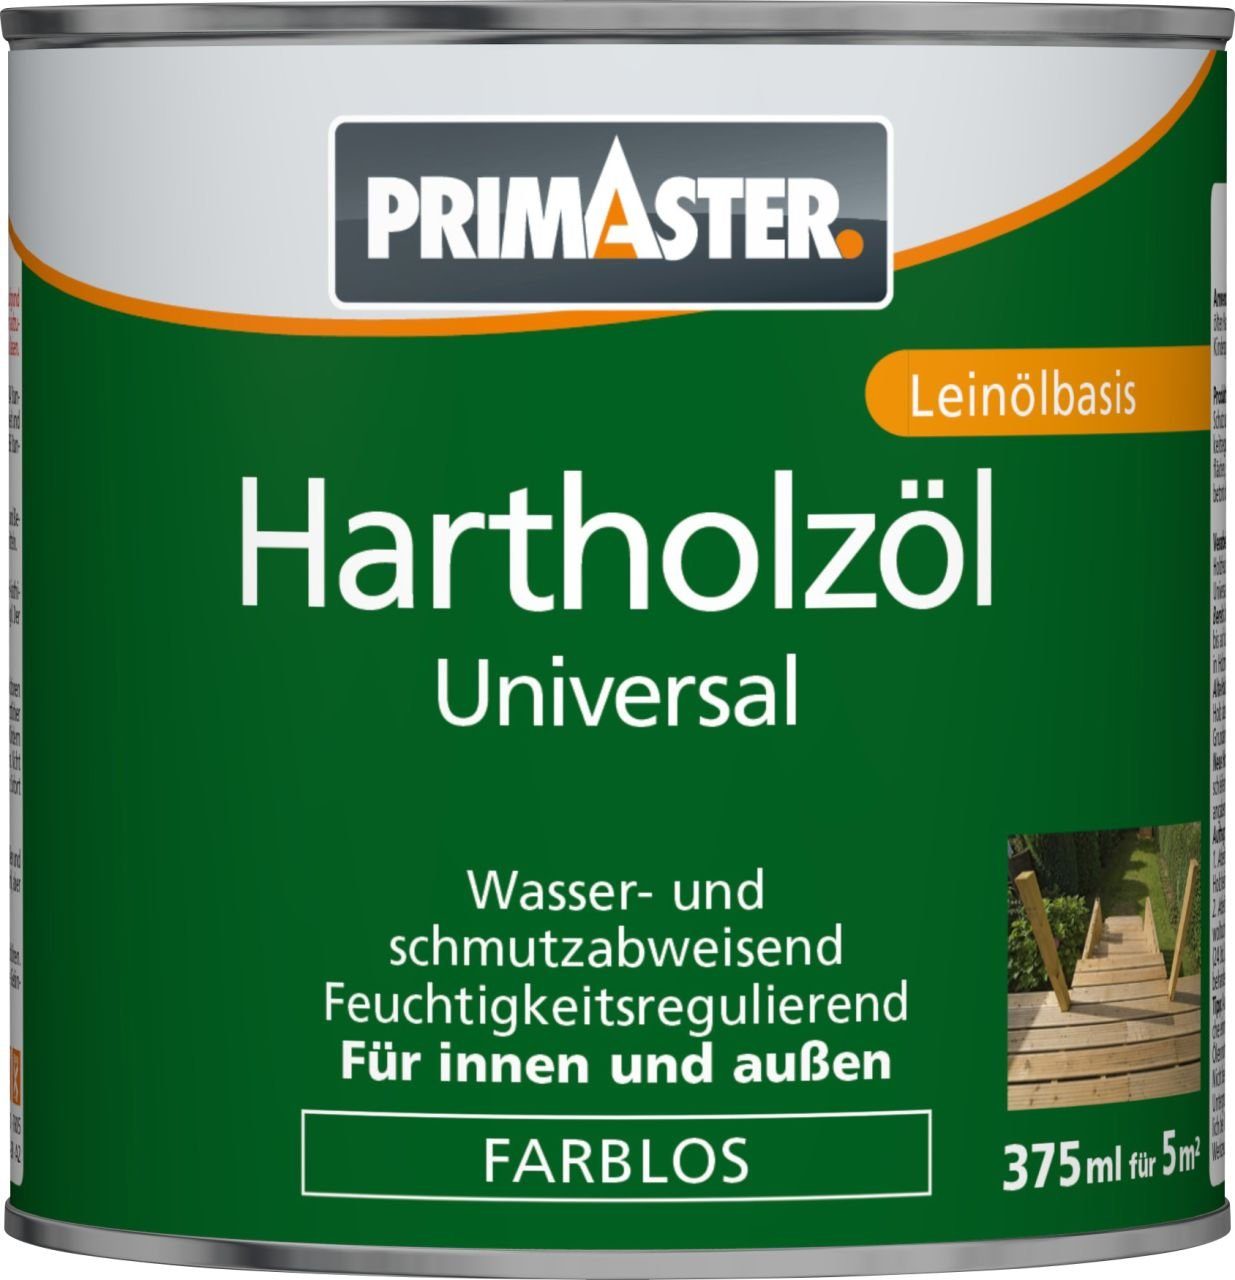 Primaster Hartholzöl Primaster Hartholzöl Universal 375 ml farblos